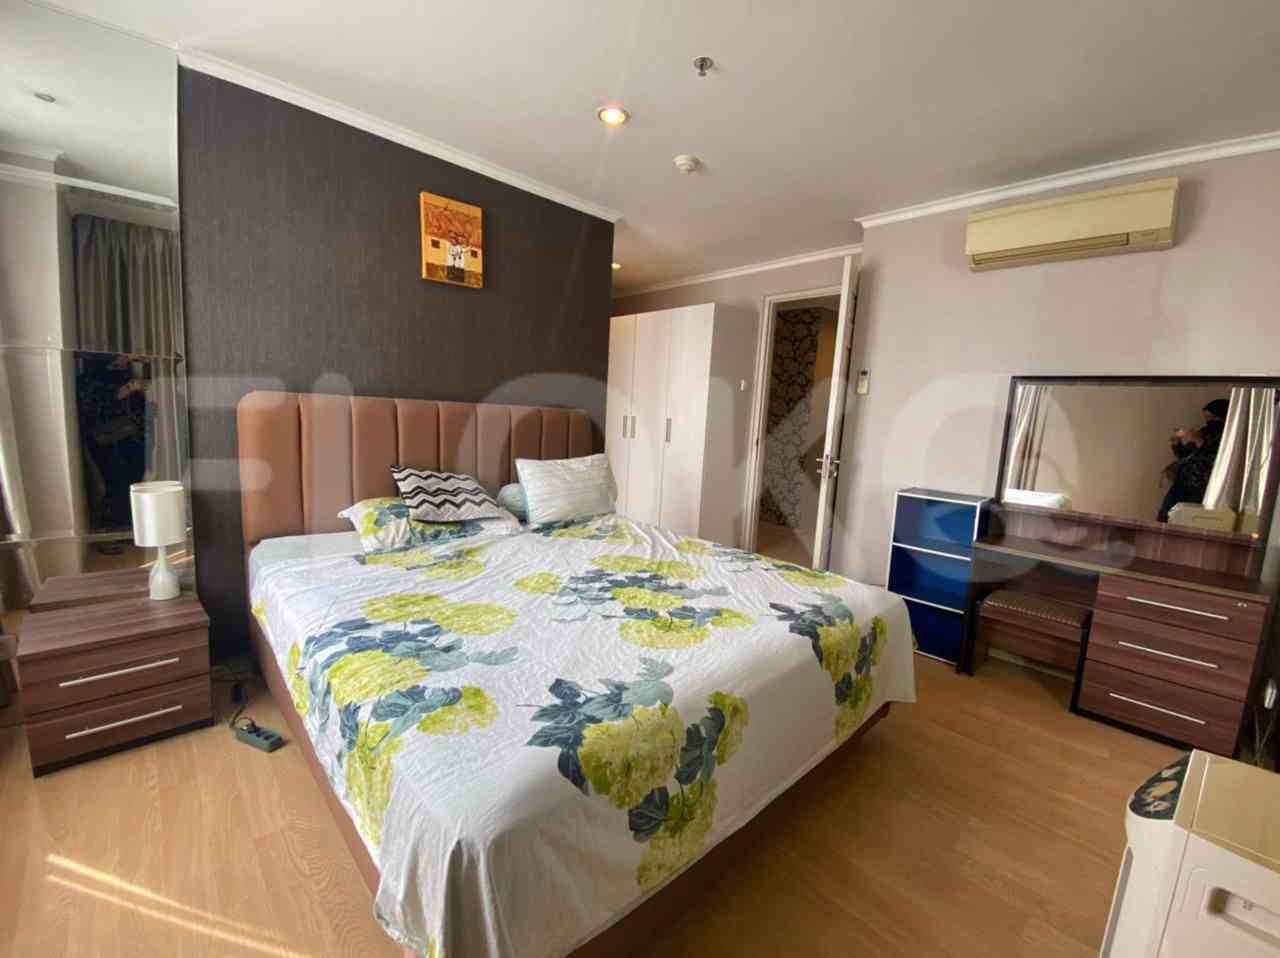 3 Bedroom on 26th Floor for Rent in FX Residence - fsub66 5